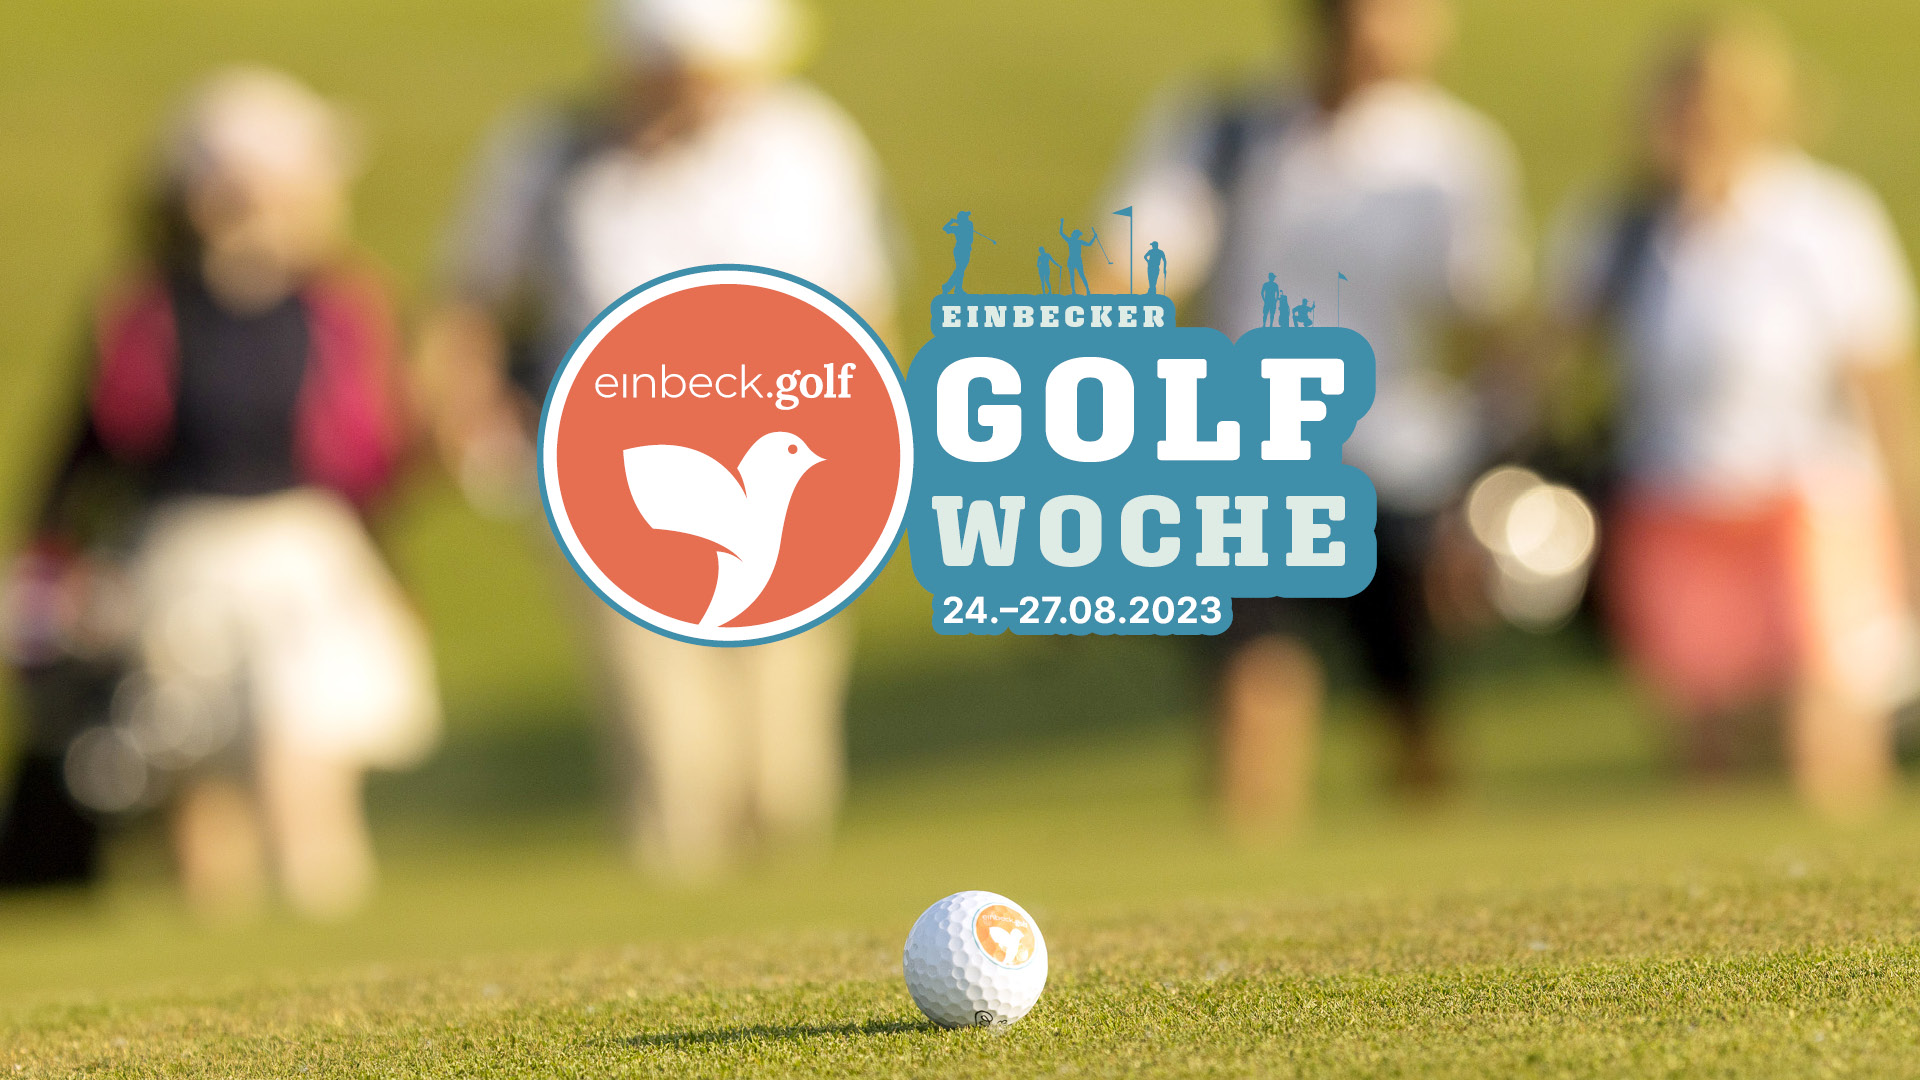 Golf, Spaß, irre Preise: Mach bei der Einbecker Golfwoche mit!